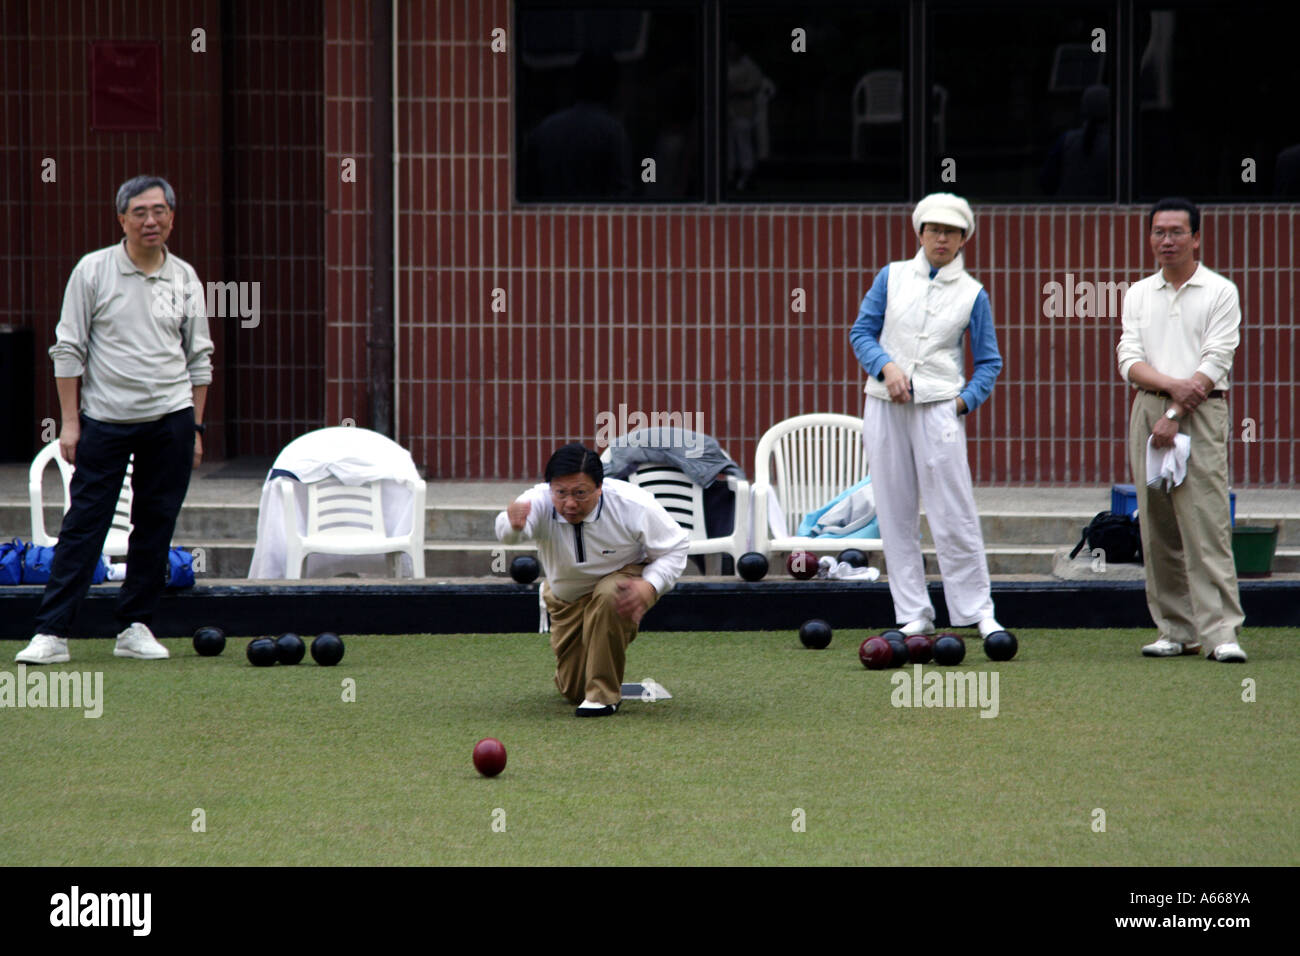 Bocce, lawn bowling at the Craigengower Cricket Club in Hong Kong, China Stock Photo